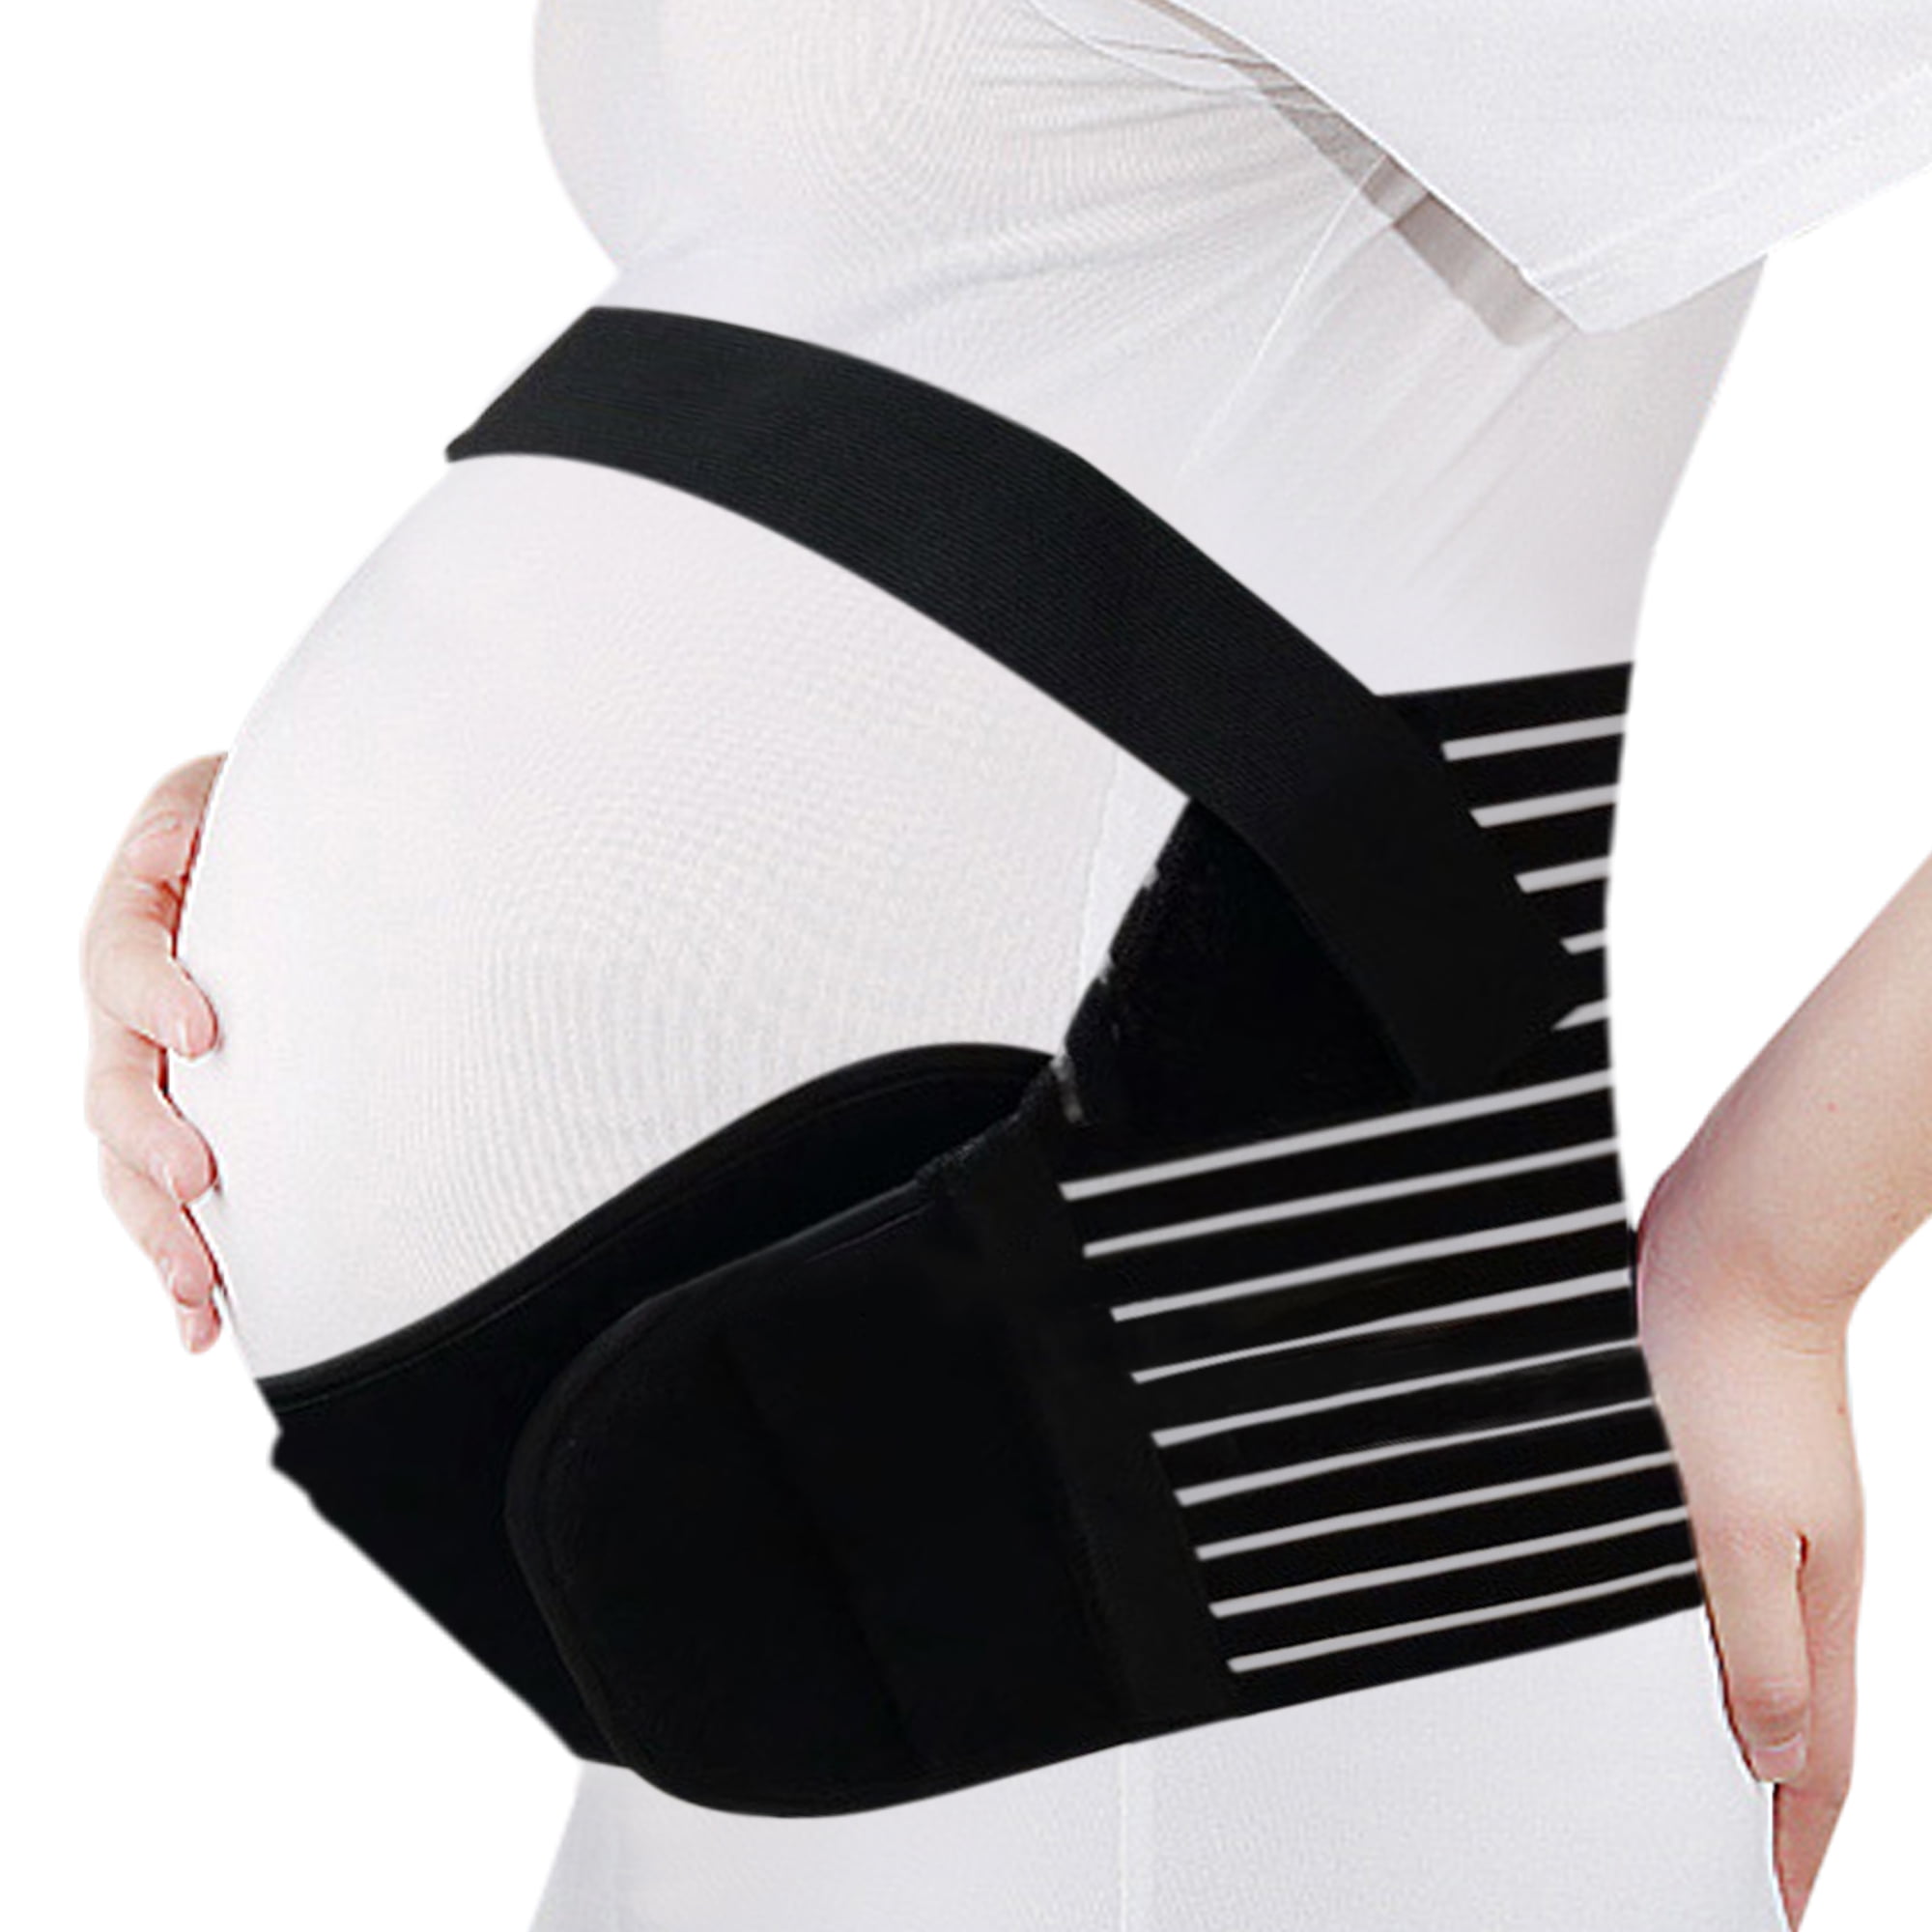 MATERNITY PREGNANCY BELT LUMBAR BACK SUPPORT WAIST BAND BELLY BUMP BRACE MEDICAL 